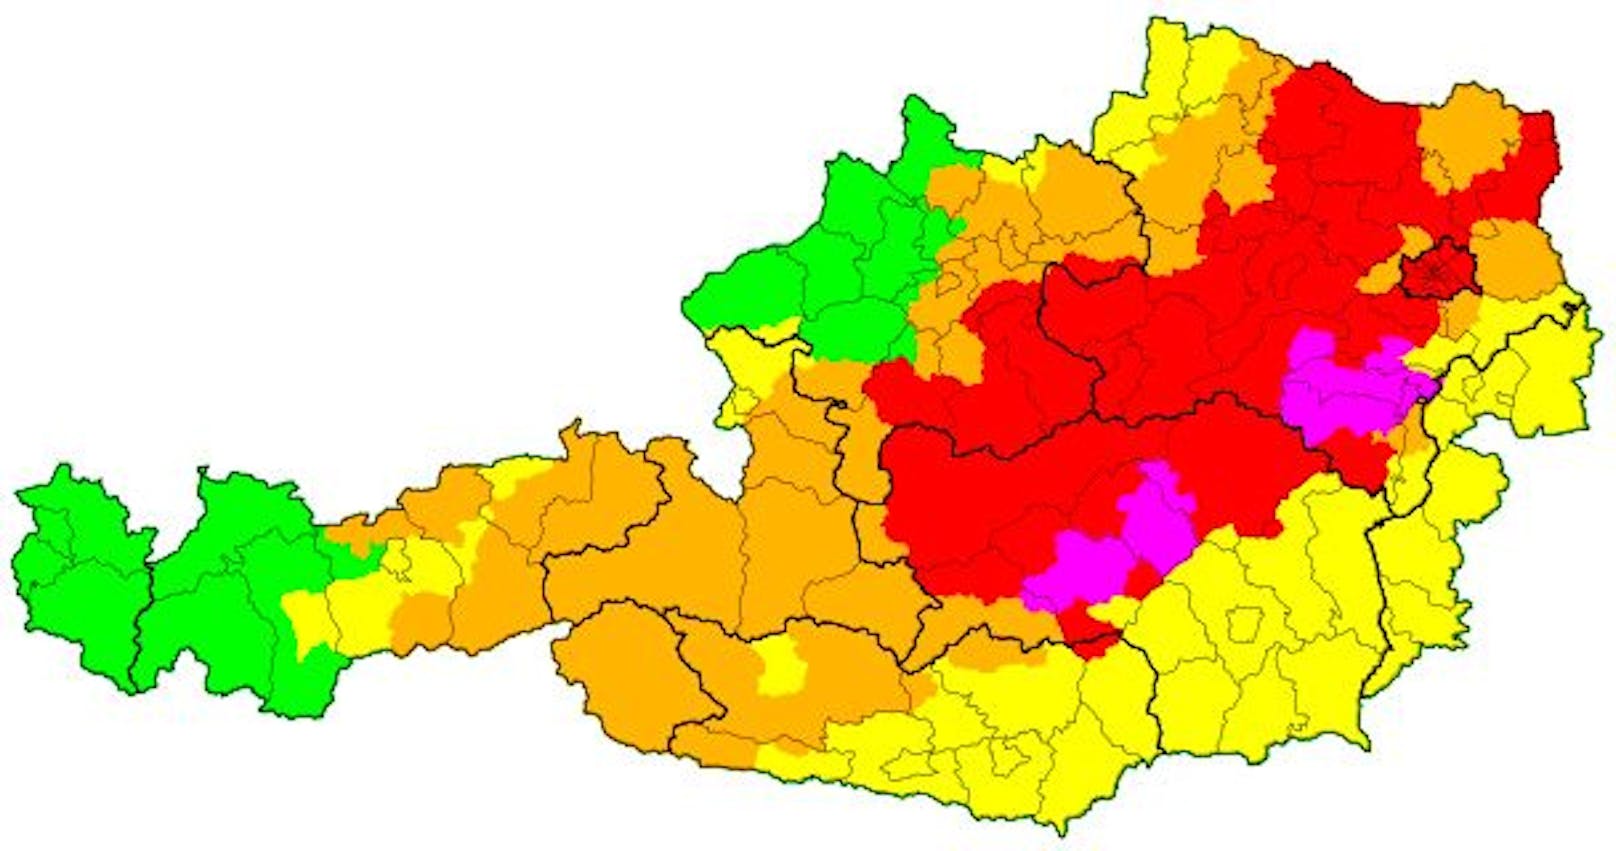 Ab <strong>20.10 Uhr</strong> galt Warnstufe Rot für ganz Wien, kurz darauf wurde im Süden Niederösterreichs die höchste Warnstufe ausgegeben.